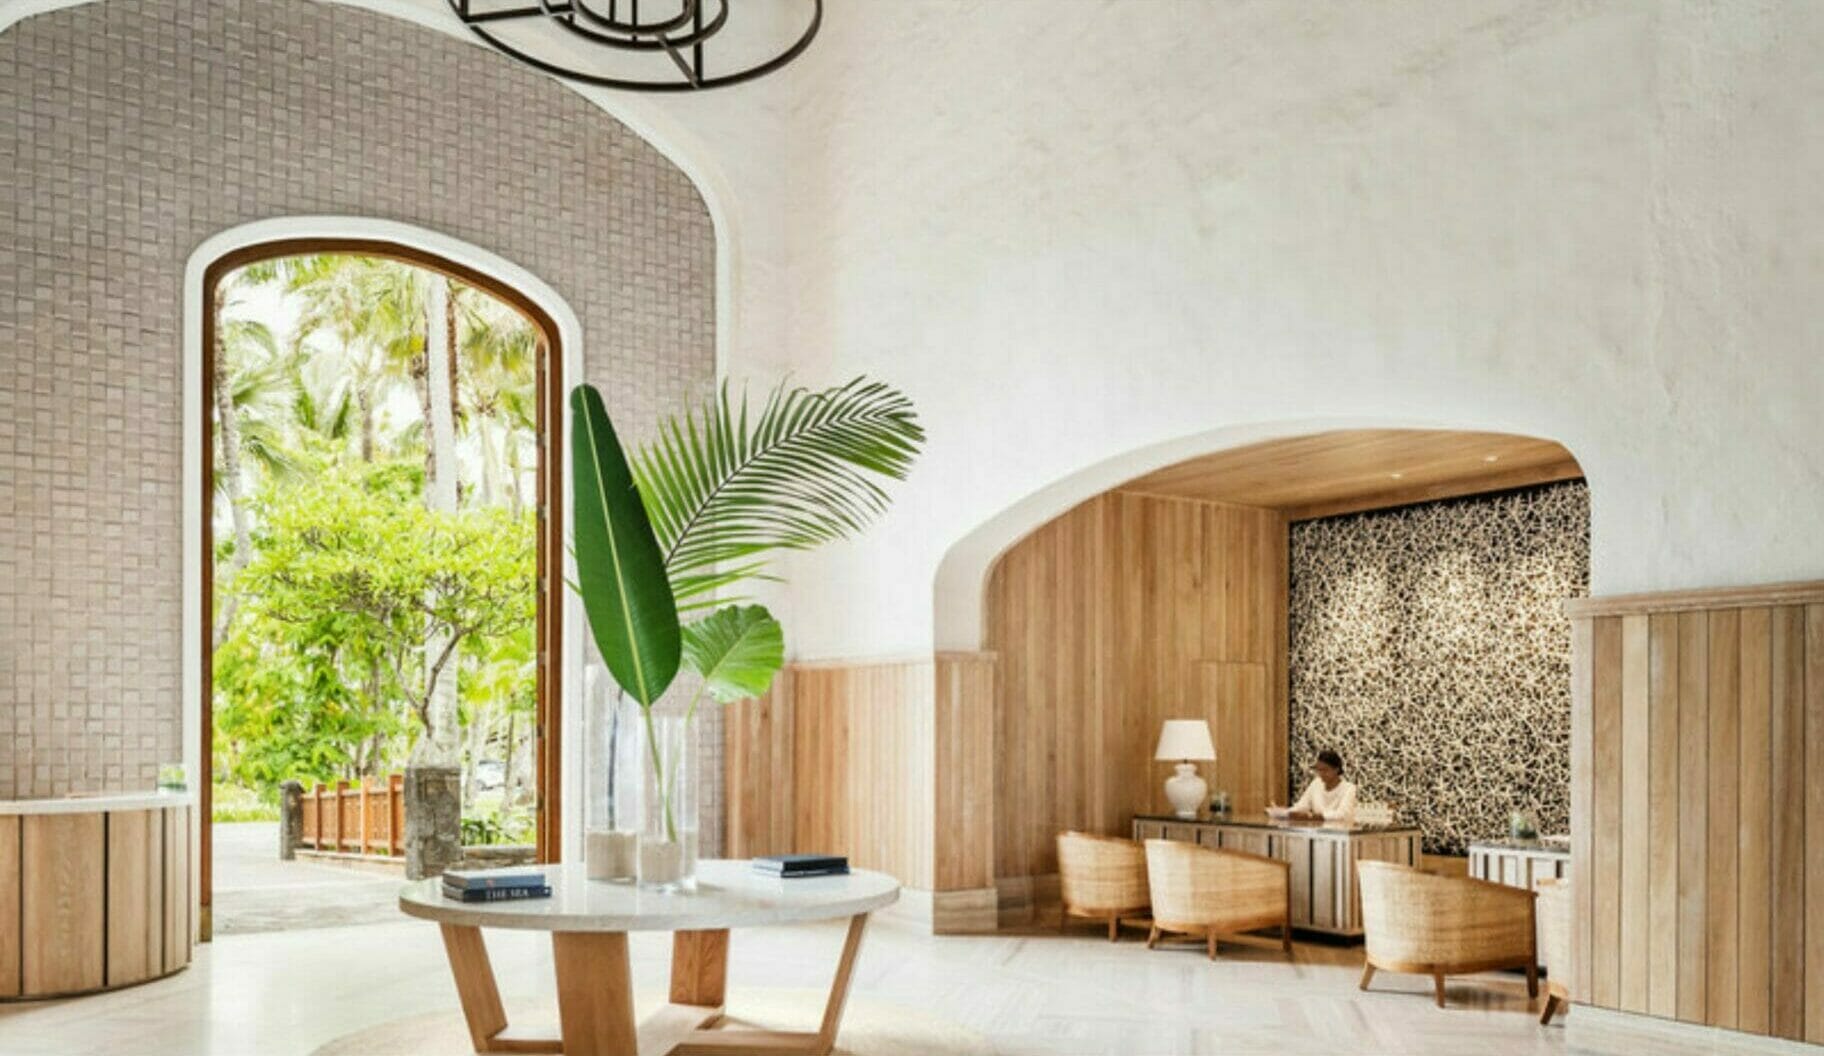 Die Lobby eines Hotels ist mit Holz und Pflanzen dekoriert.